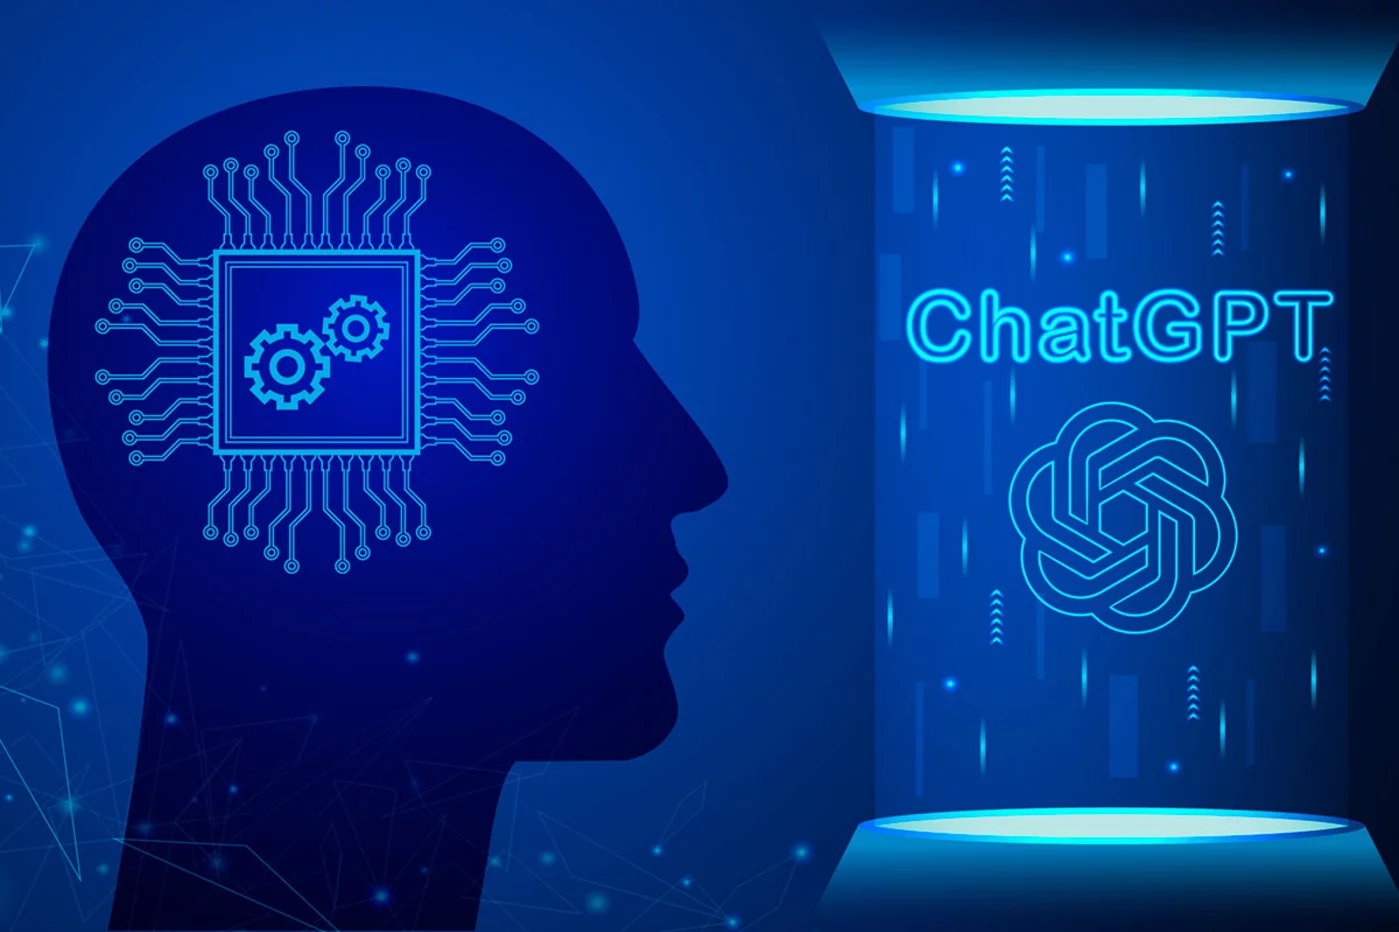 Con ChatGPT, la inteligencia artificial hace un uso del lenguaje muy próximo al natural.